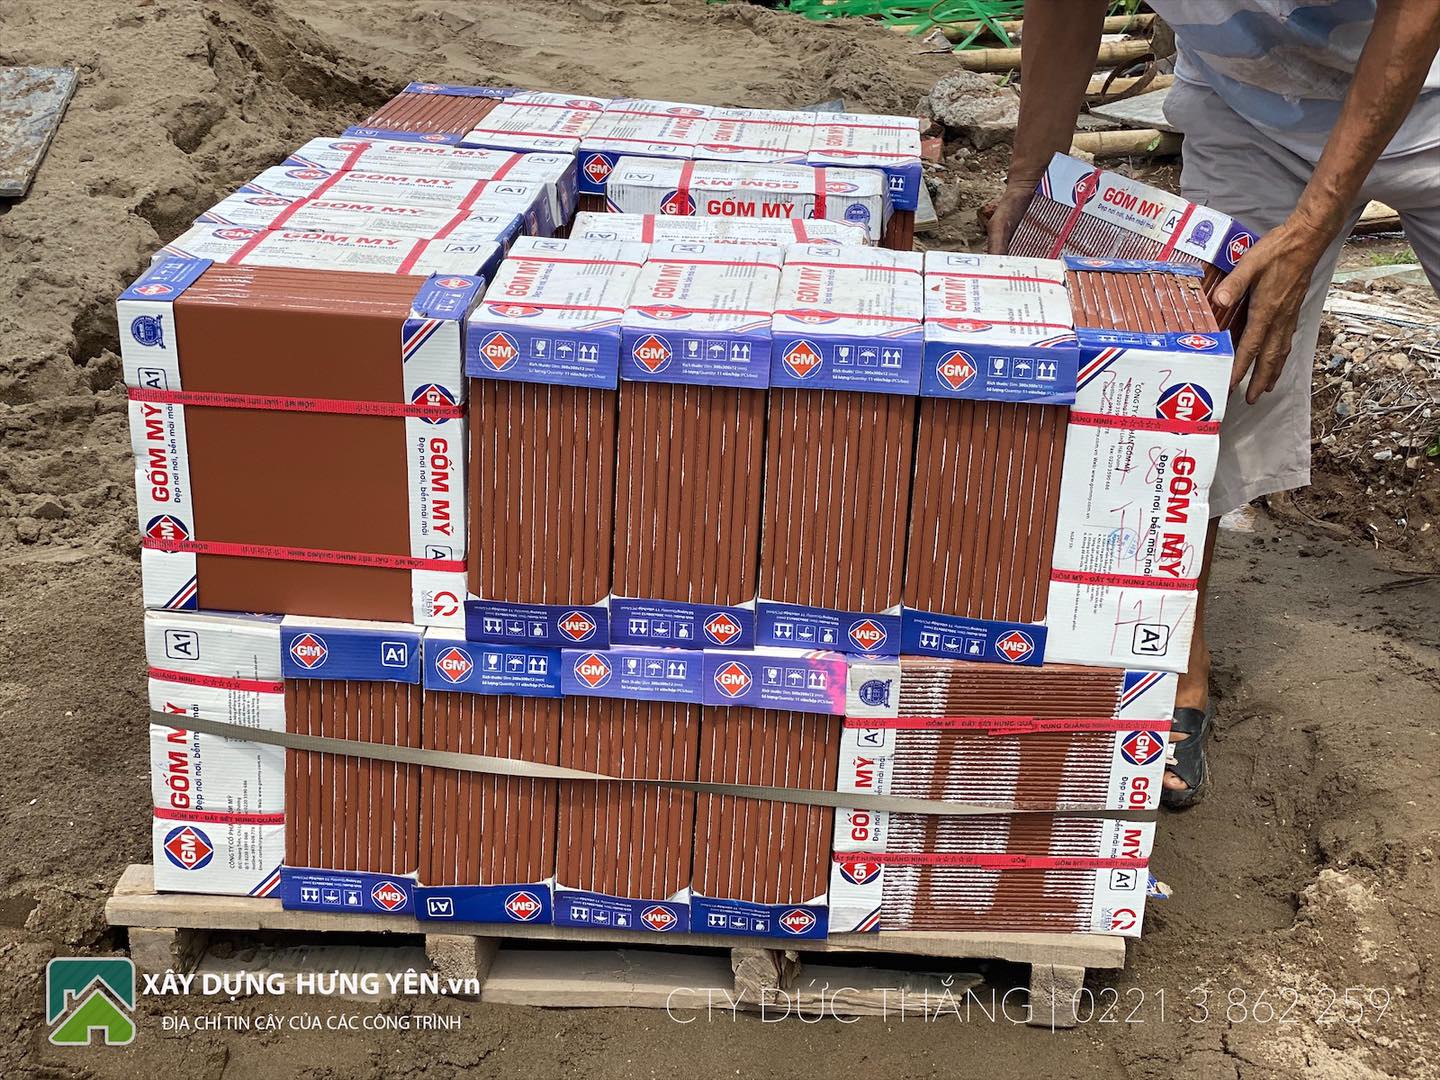 Cung cấp gạch 40x40 cottto Gốm Mỹ tại công trình bưu điện tỉnh Hưng Yên